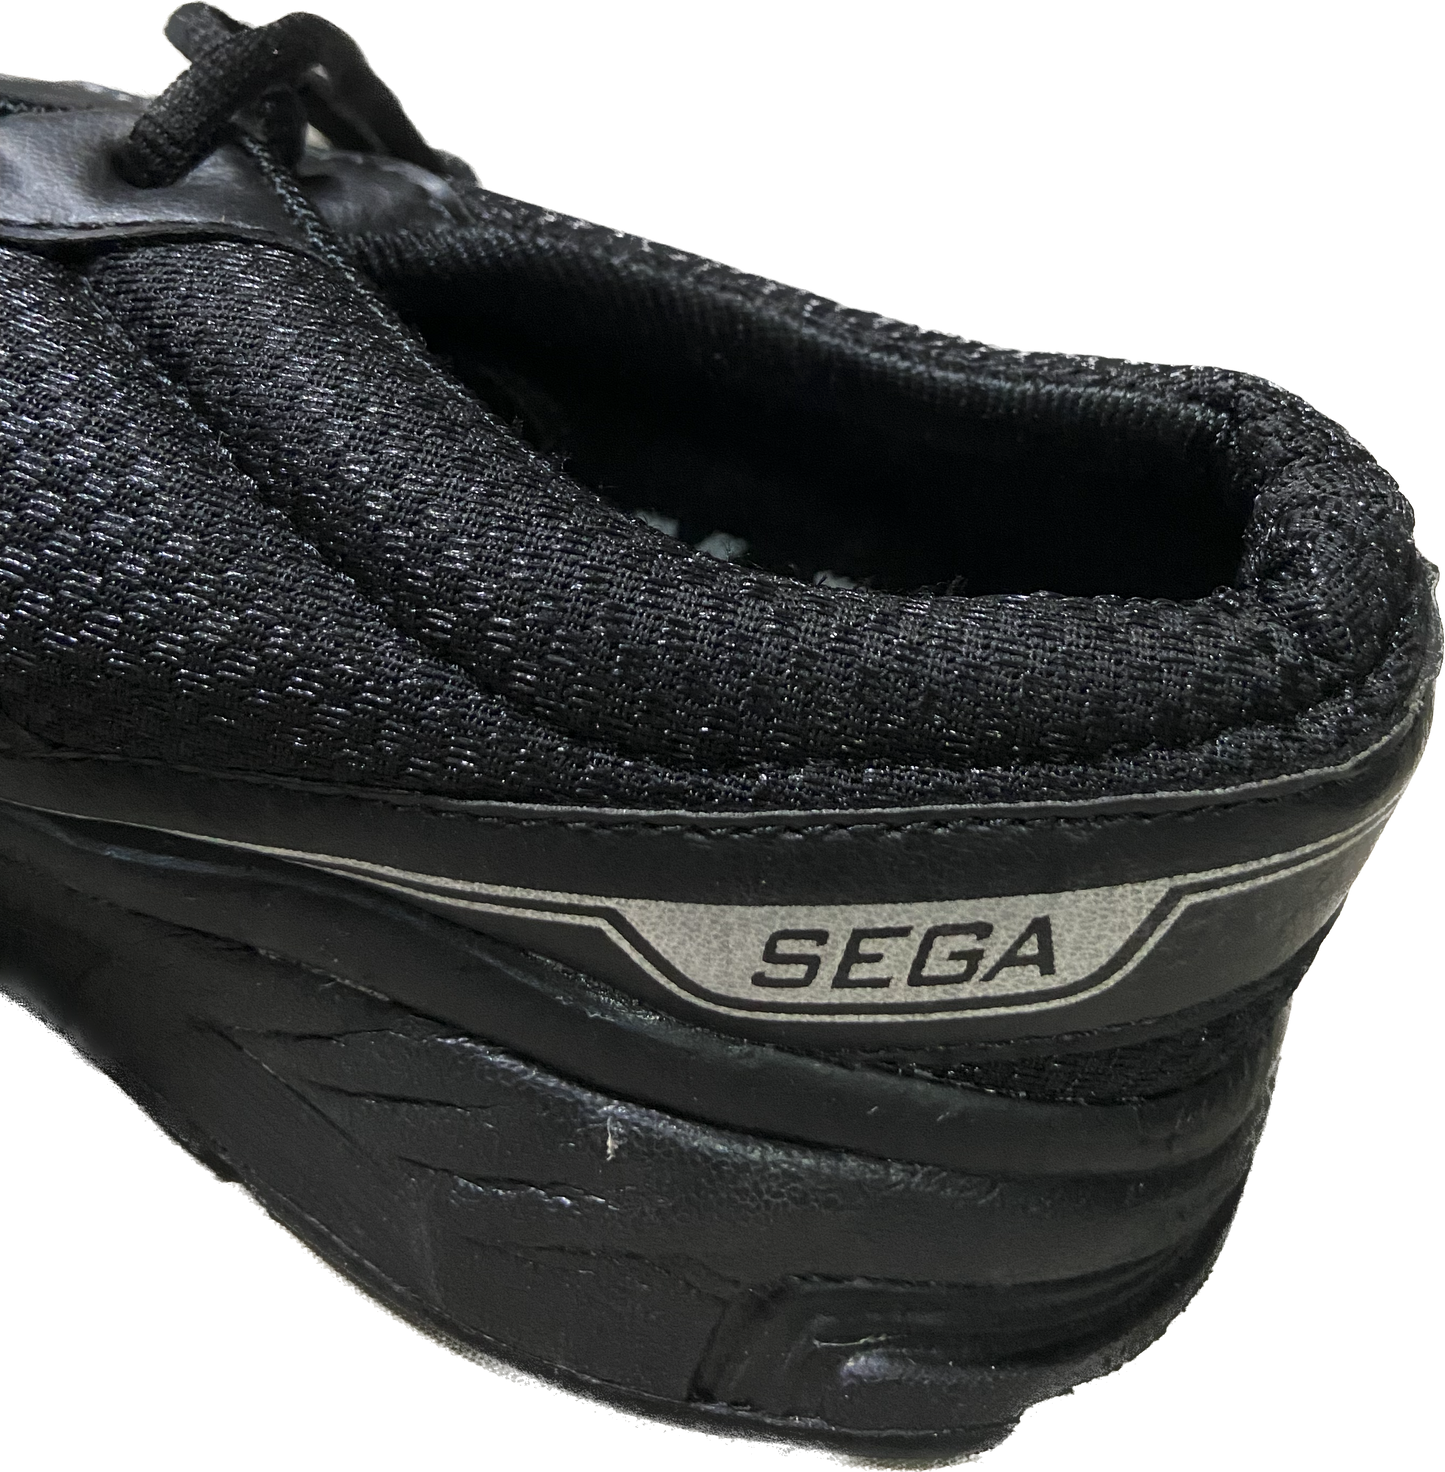 Sega Running shoes (New Model)